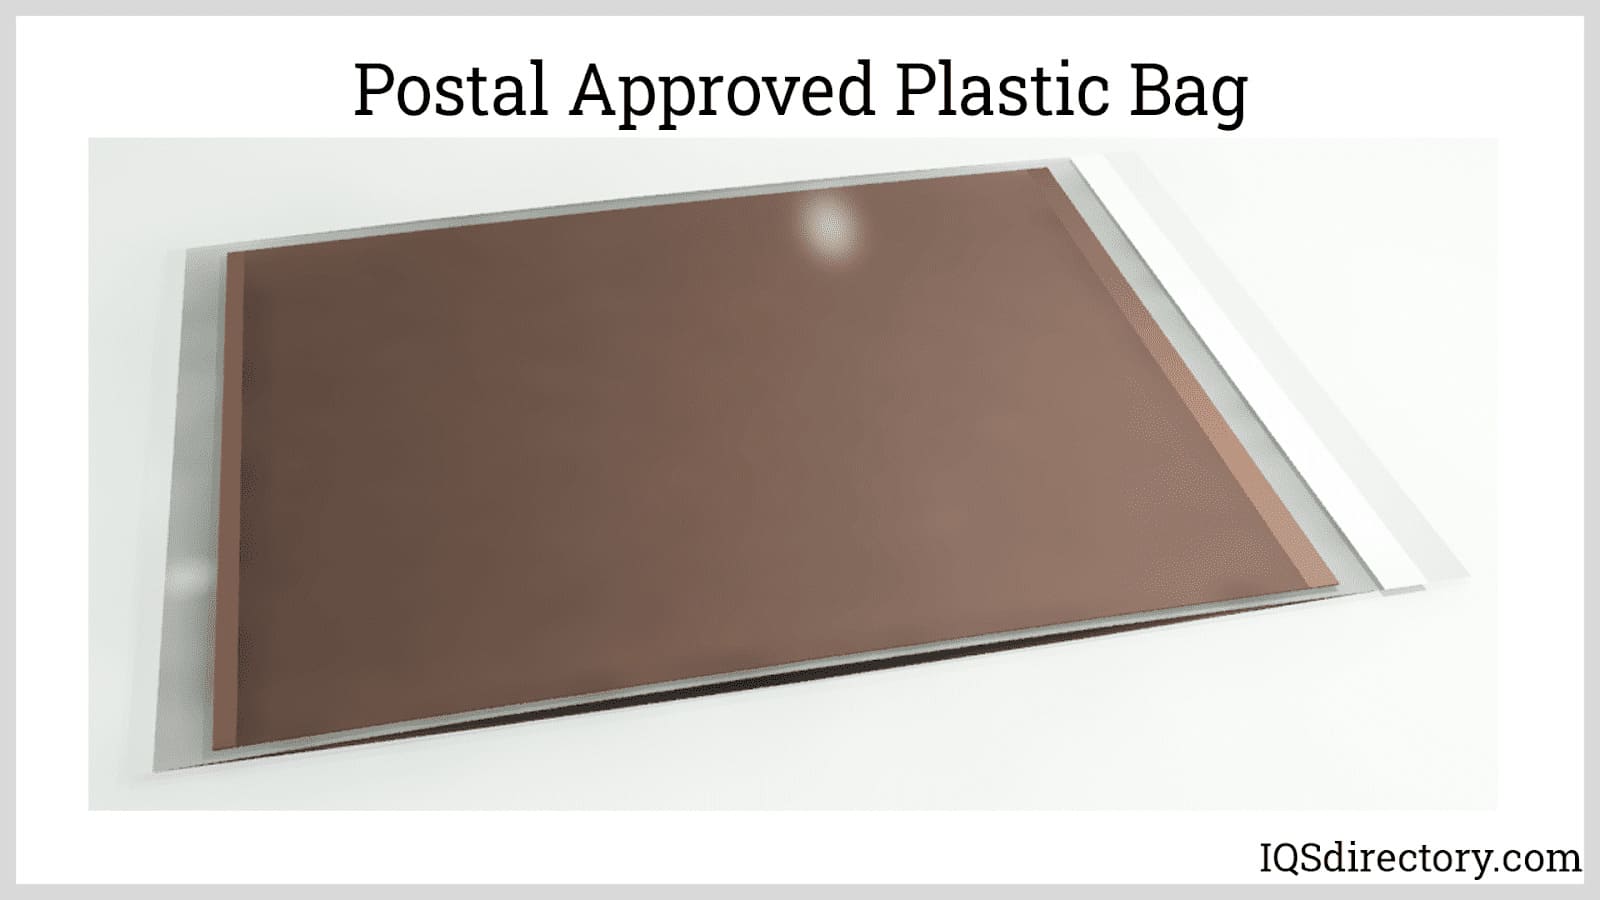 Postal Approved Plastic Bag